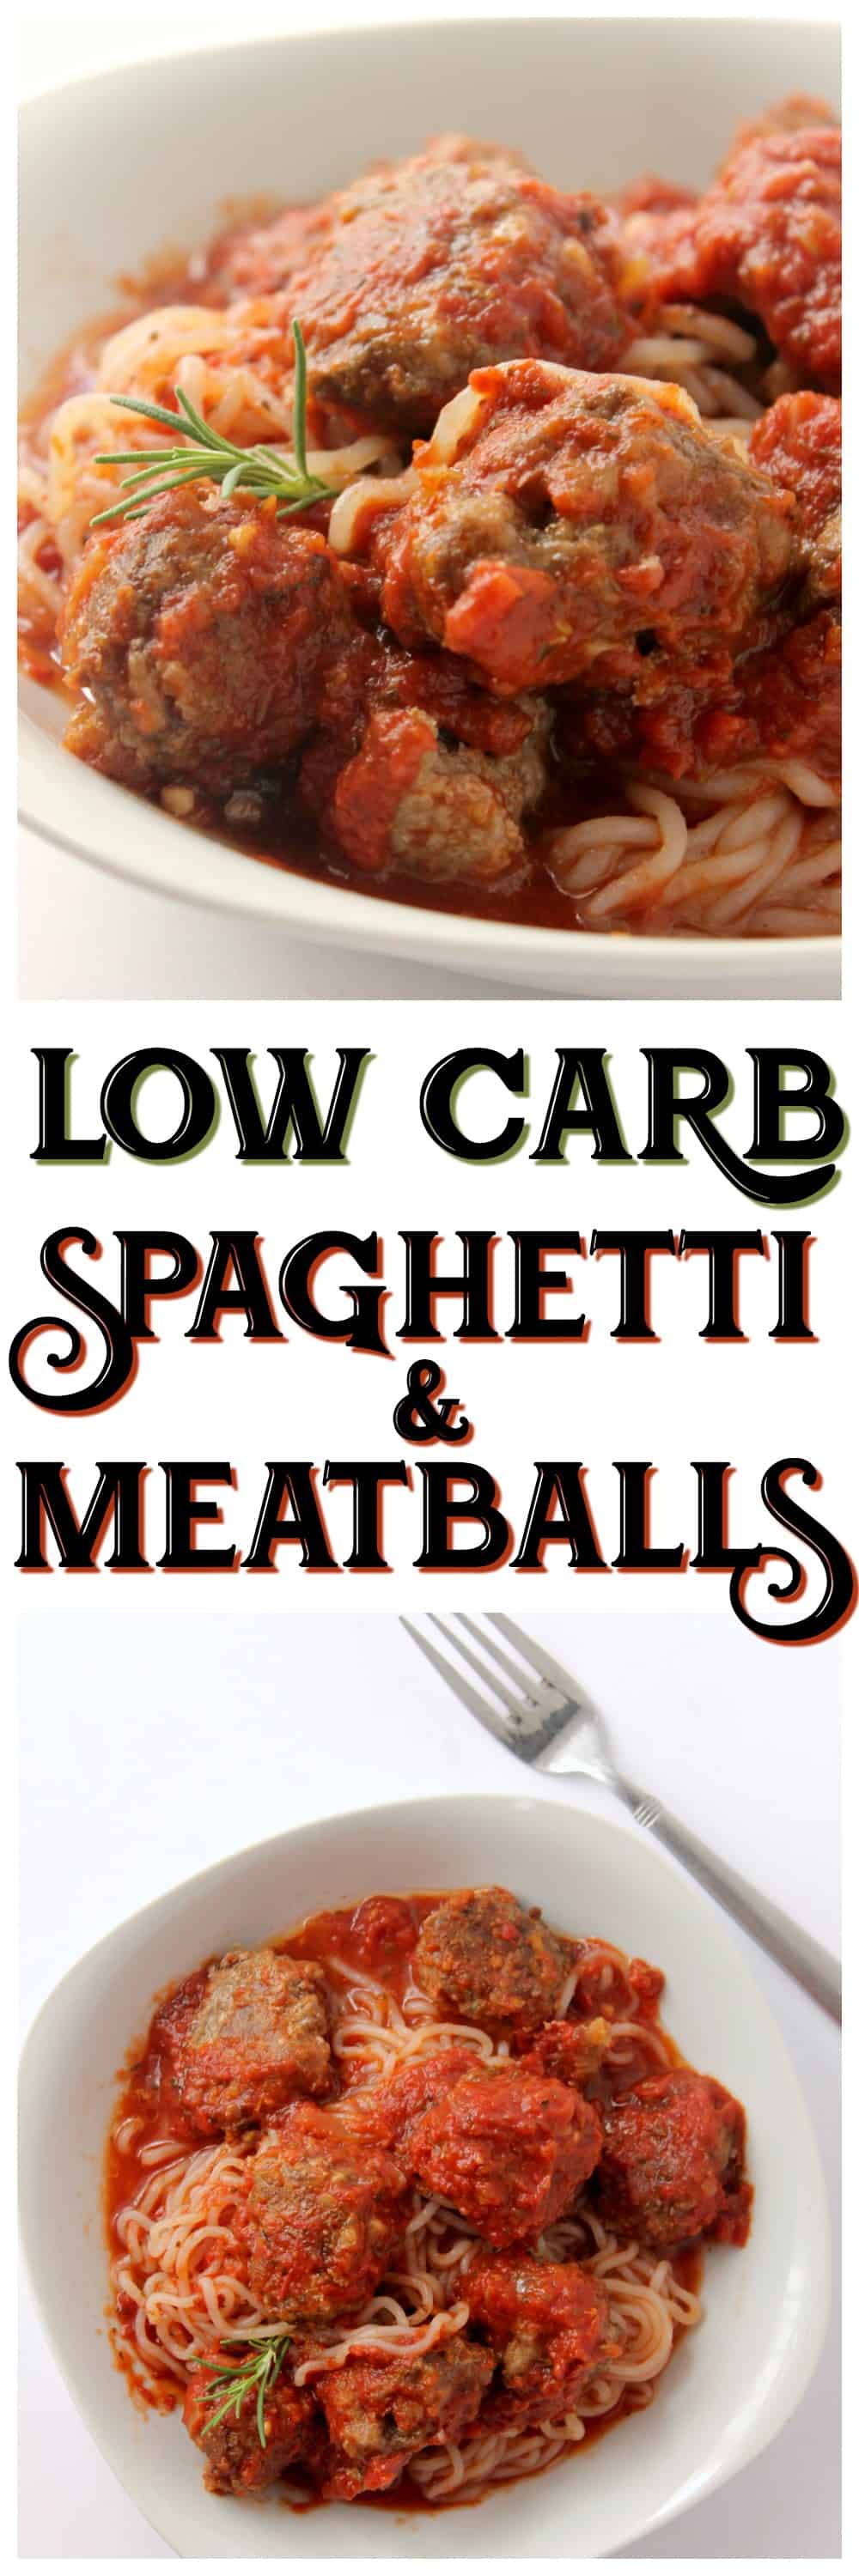 keto spaghetti and meatballs recipe